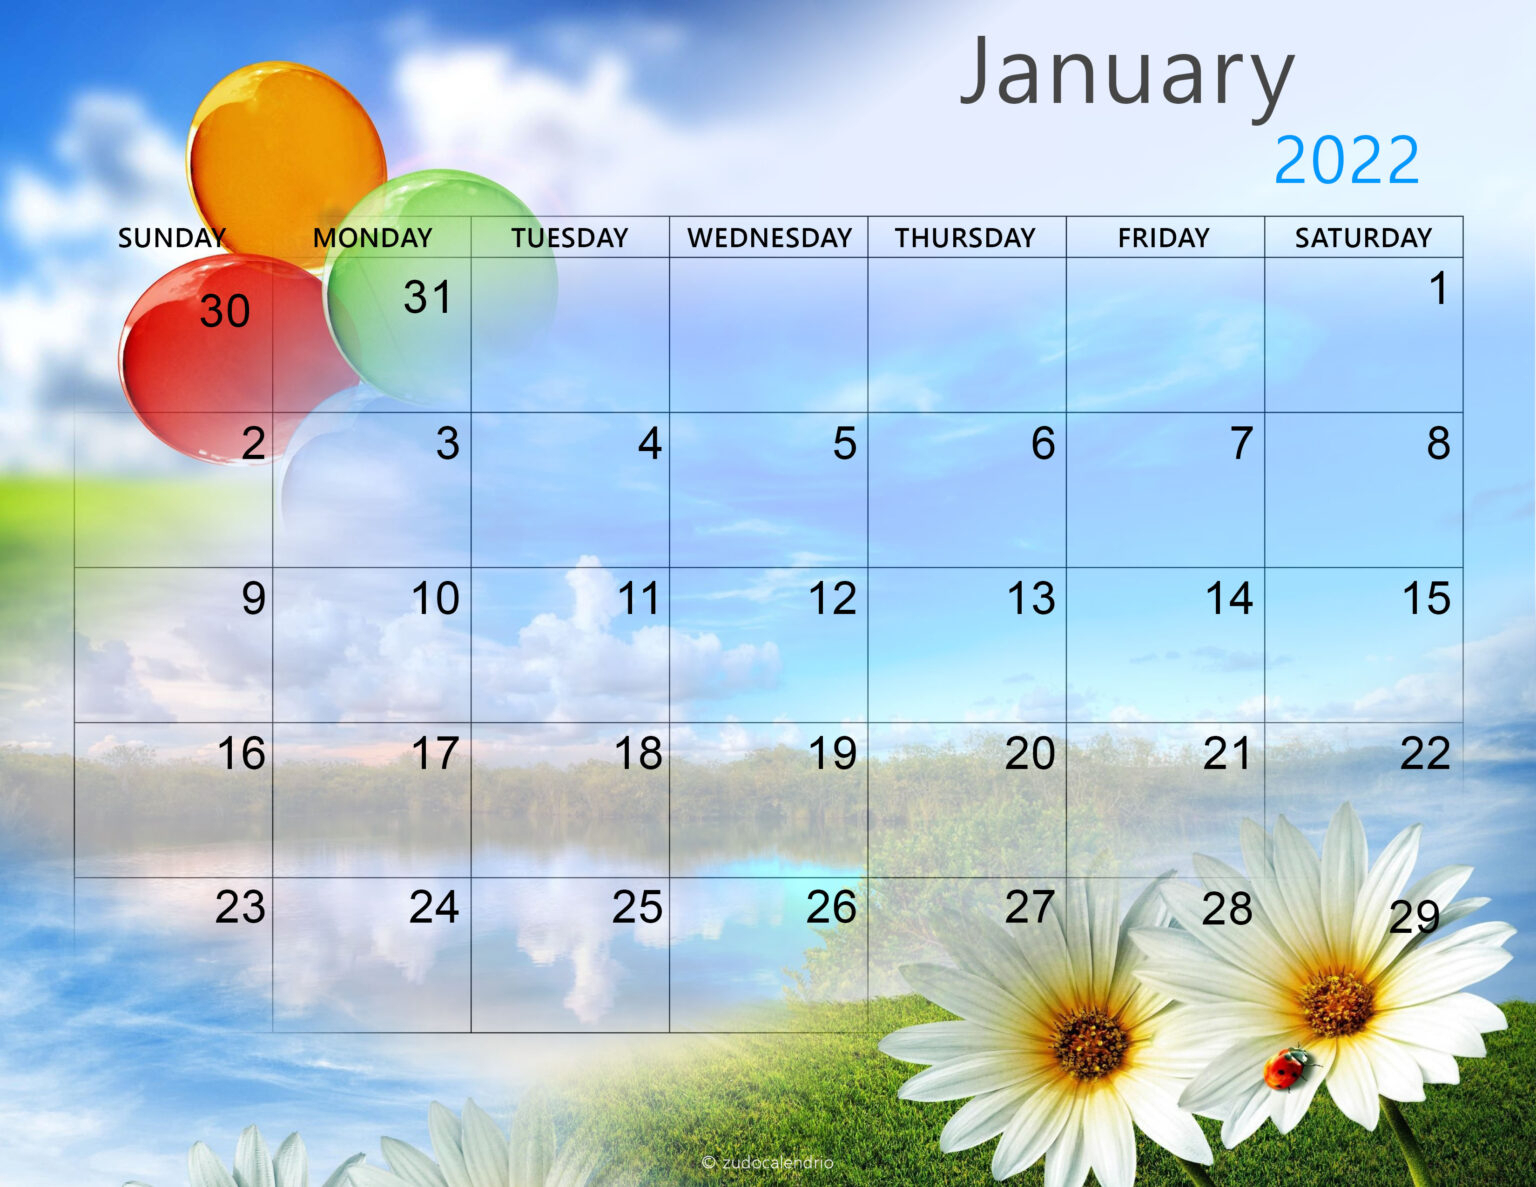 Get 2022 Calendar For January